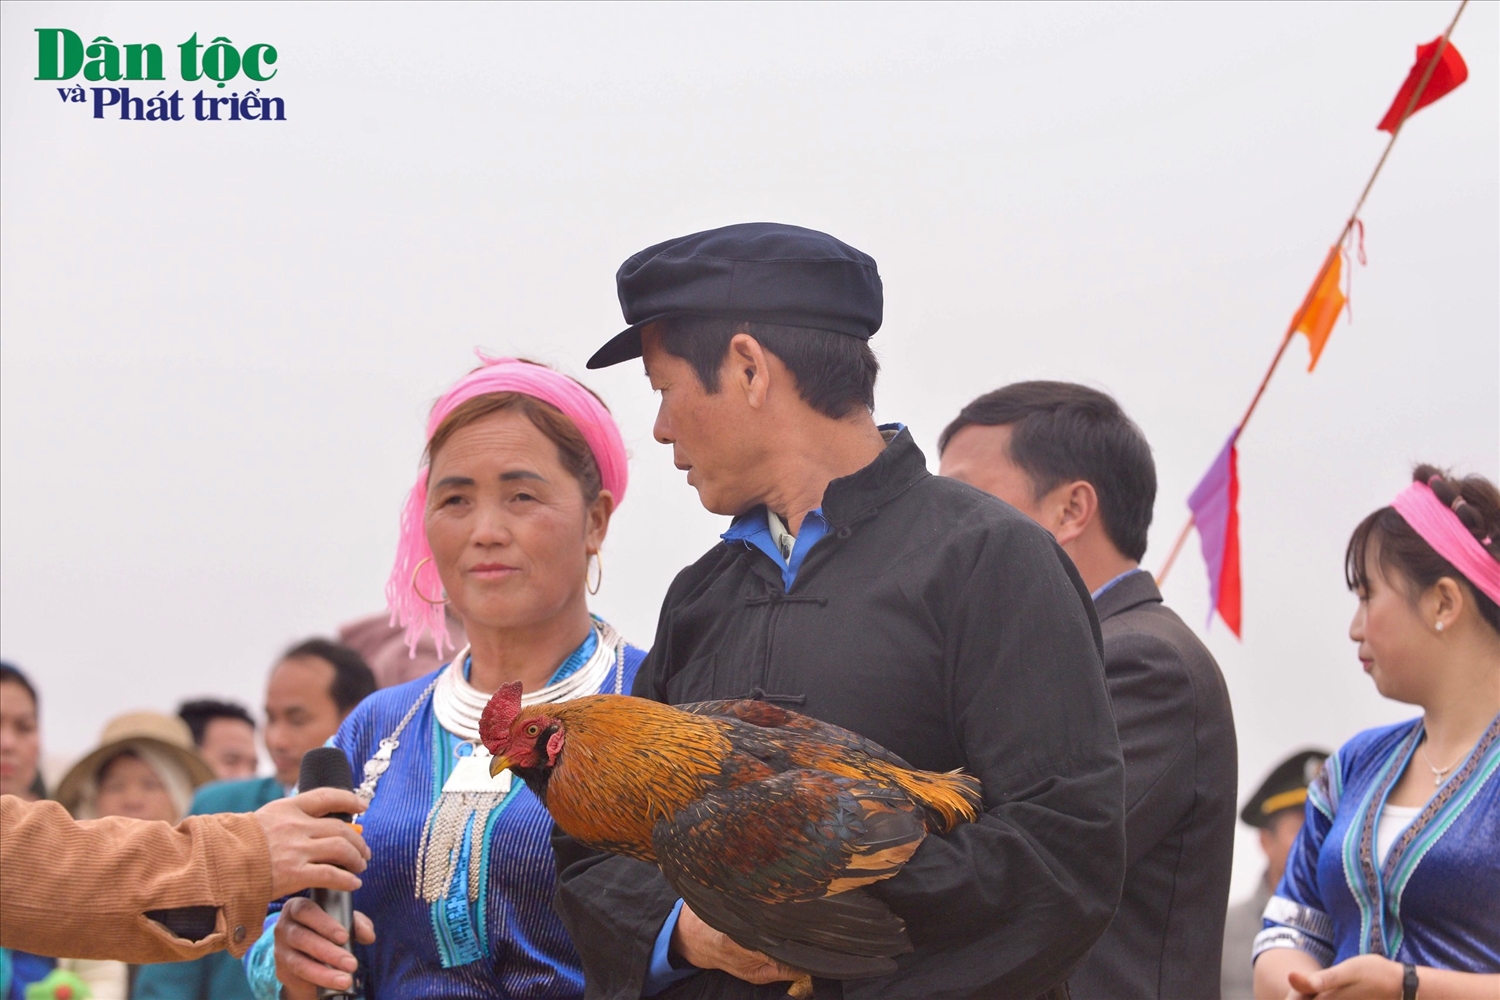 Lễ hội Gầu Tào ngoài cúng đầu trâu ra, thì phải có một chú gà trống đẹp, để thầy mo xin lễ trước khi hành lễ chính.